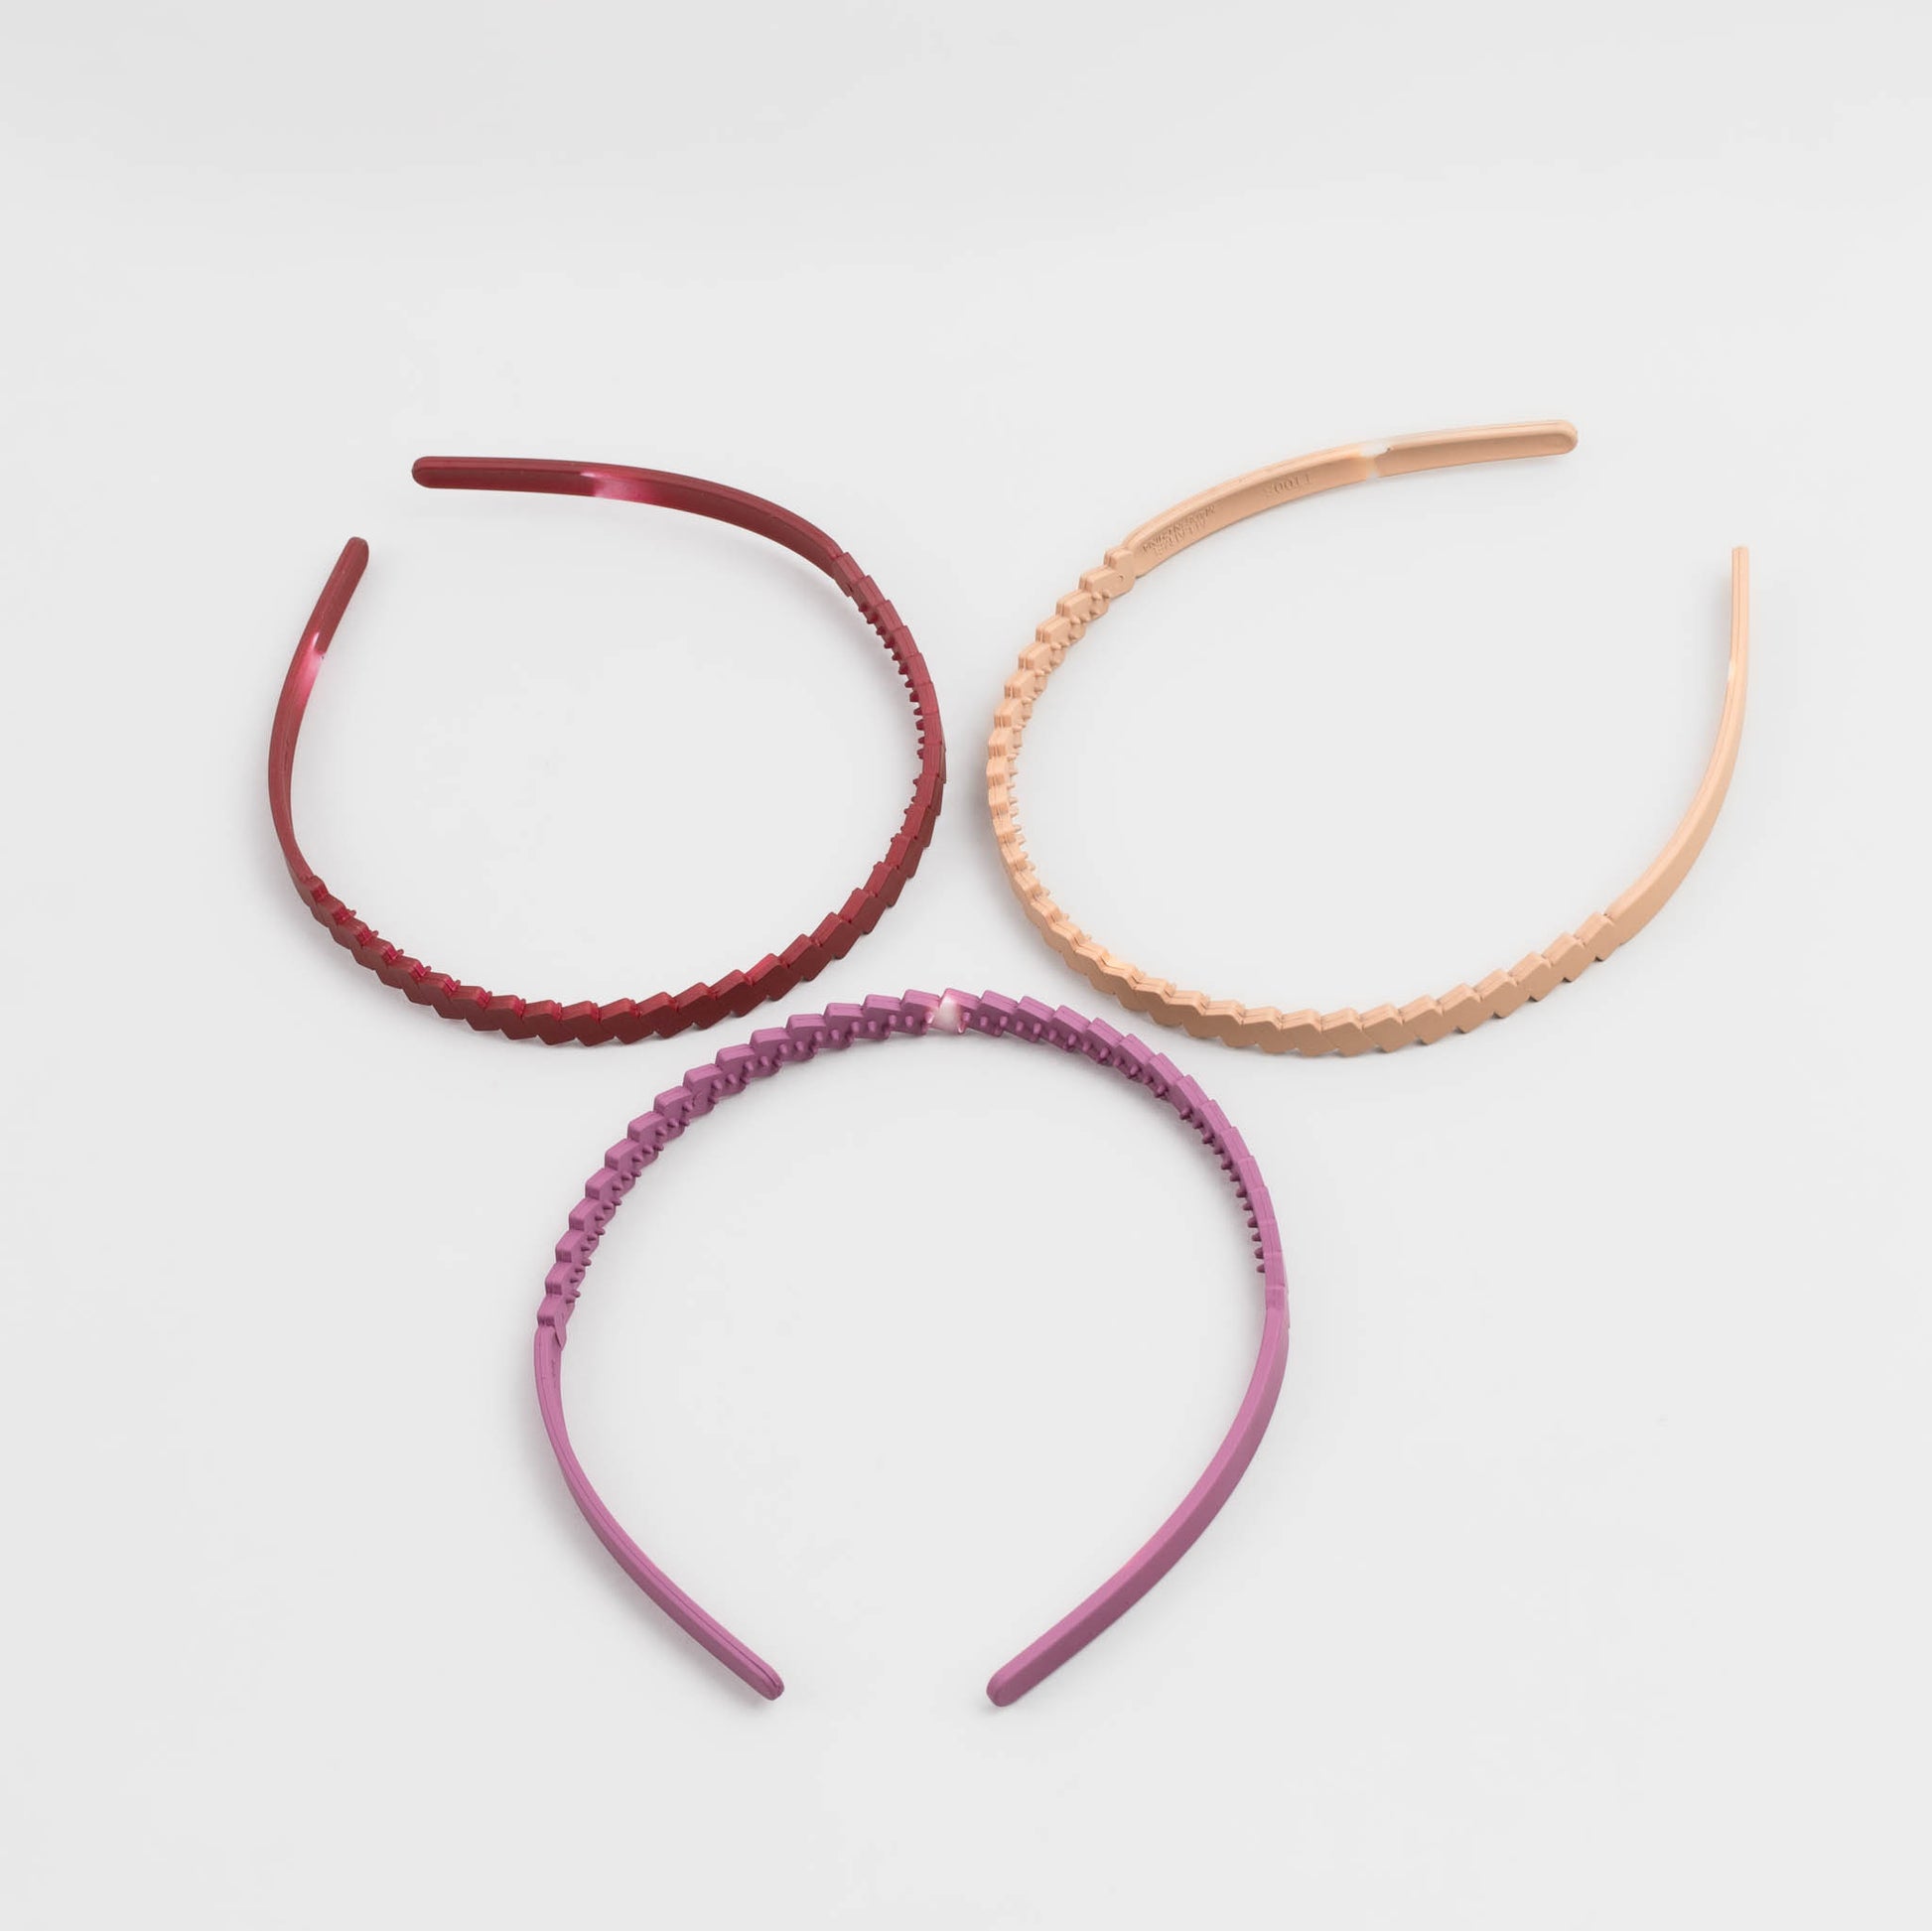 Cordeluțe de păr subțiri cu formă de zig zag și textură de silicon, set 3 buc - Mov, Roșu, Bej